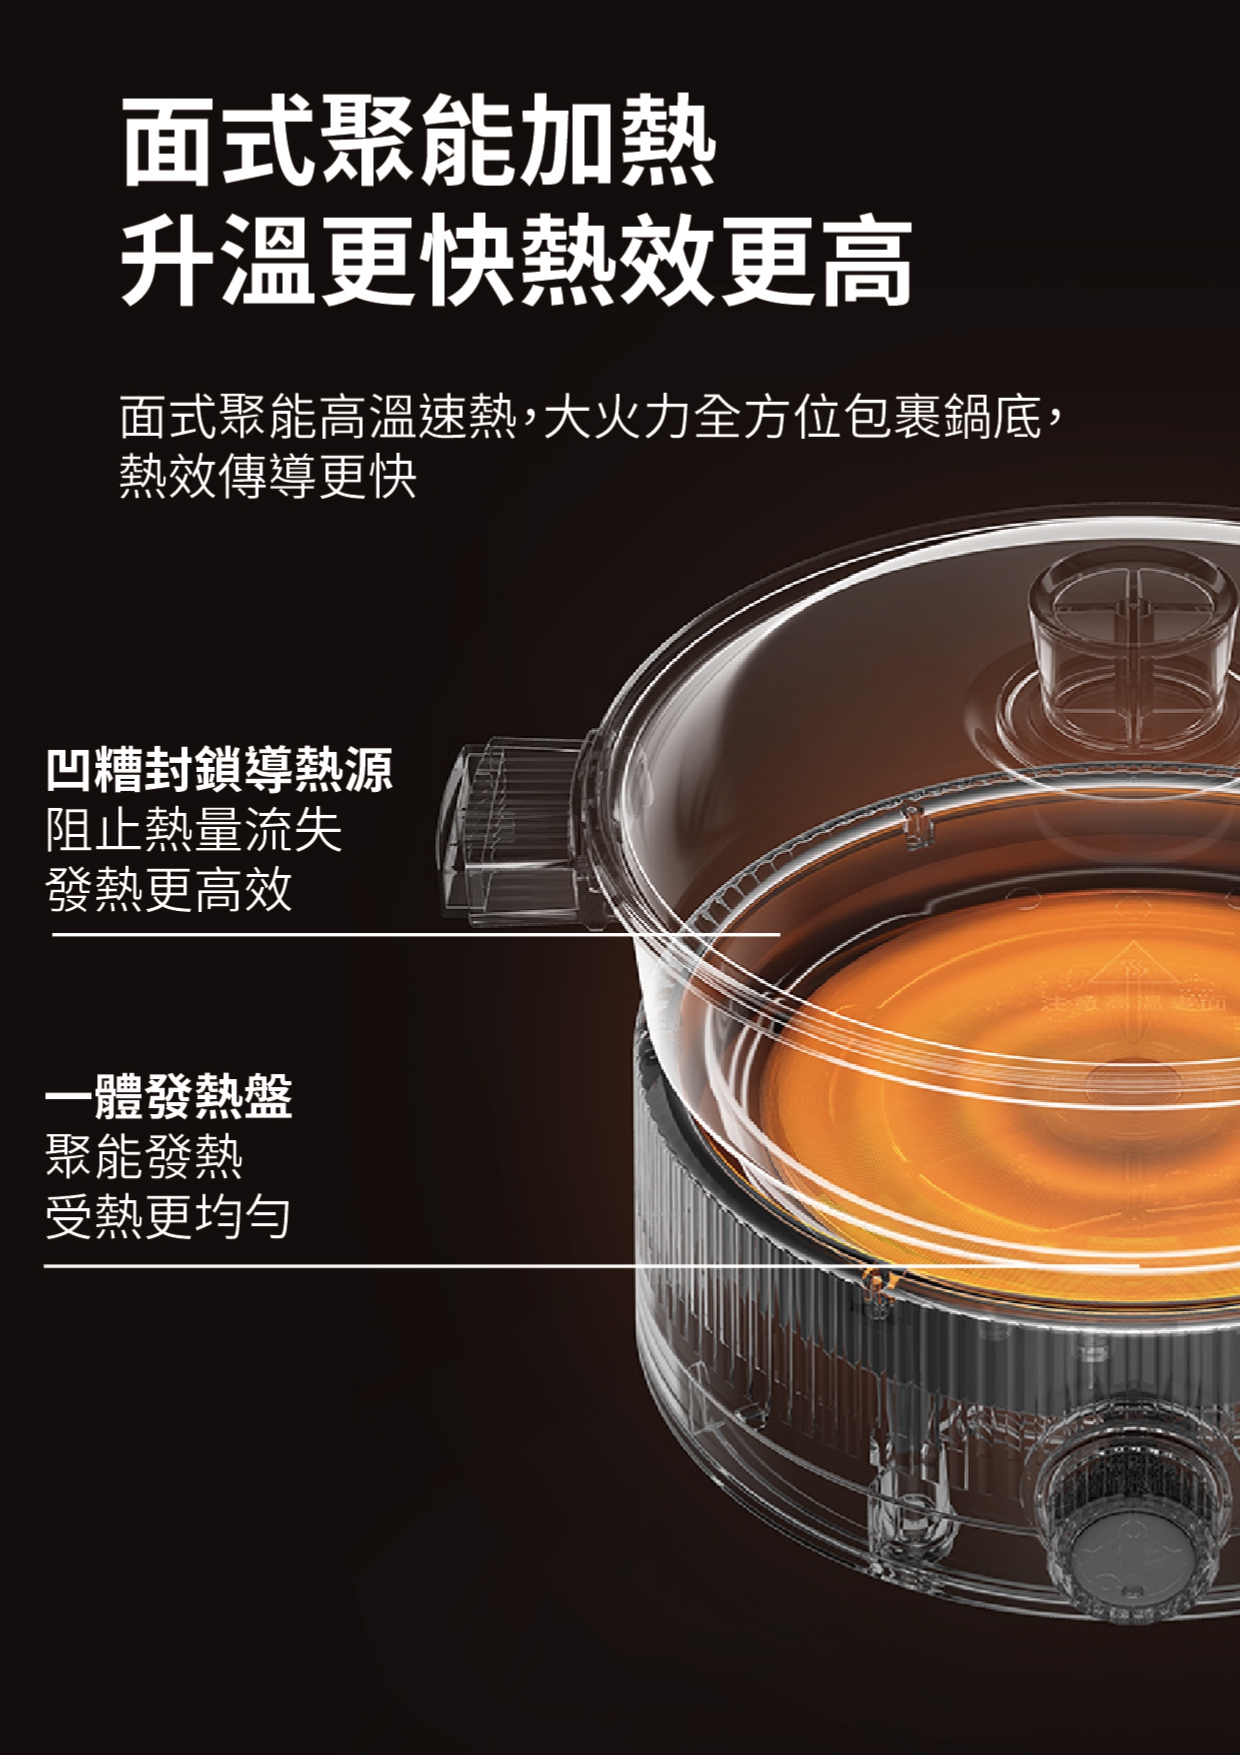 【已停產】Daewoo S18-CW 3.5升 1360W 多功能料理鍋 (米白色)